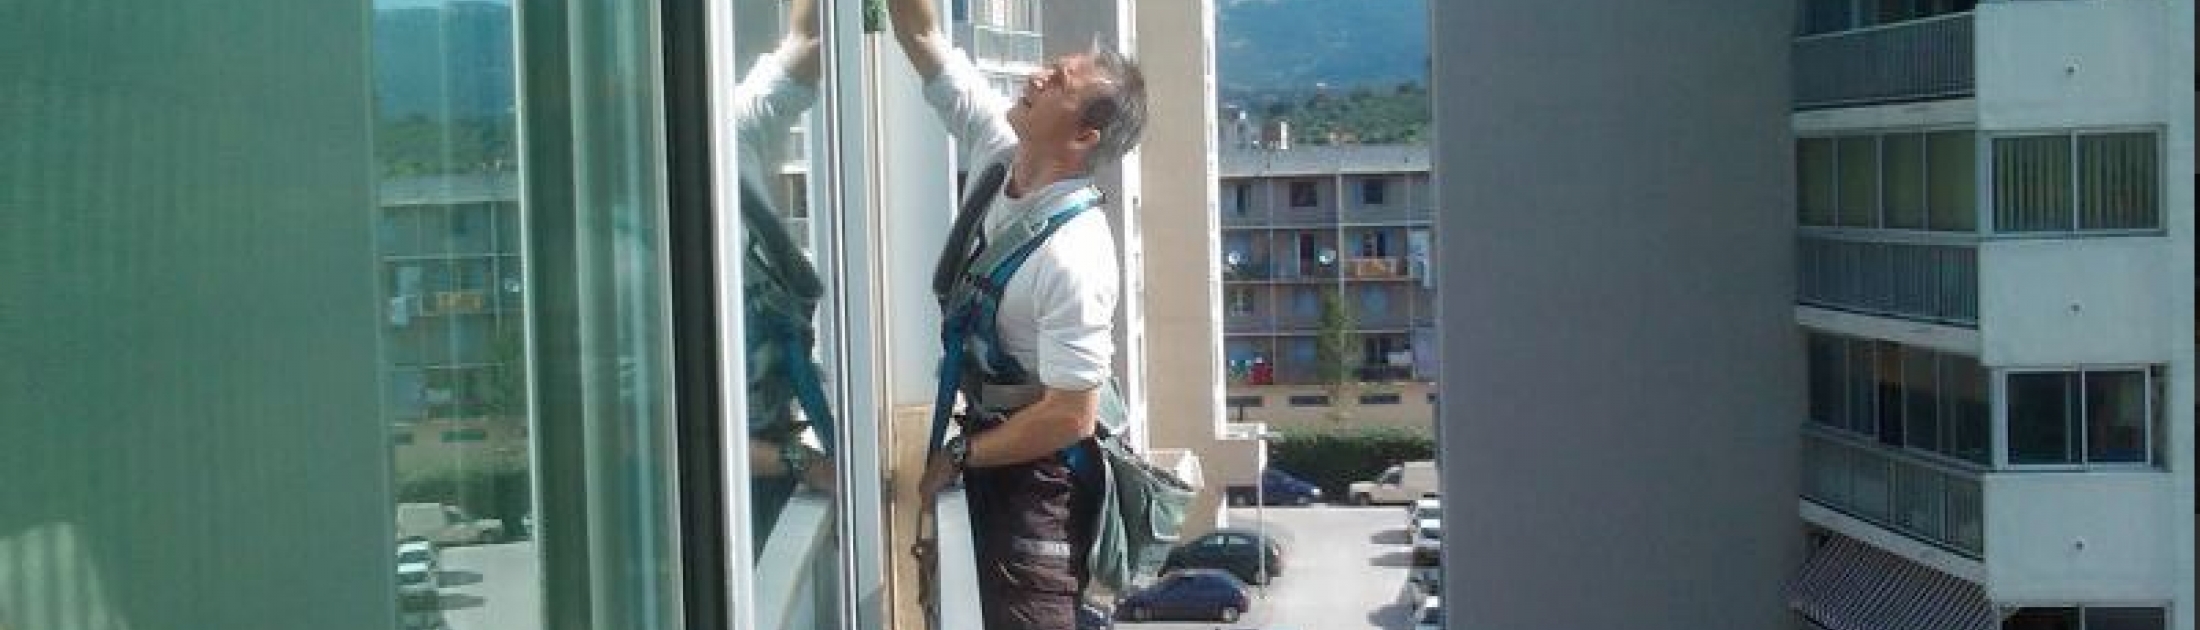 Nettoyage des vitres en hauteur avec nacelle 